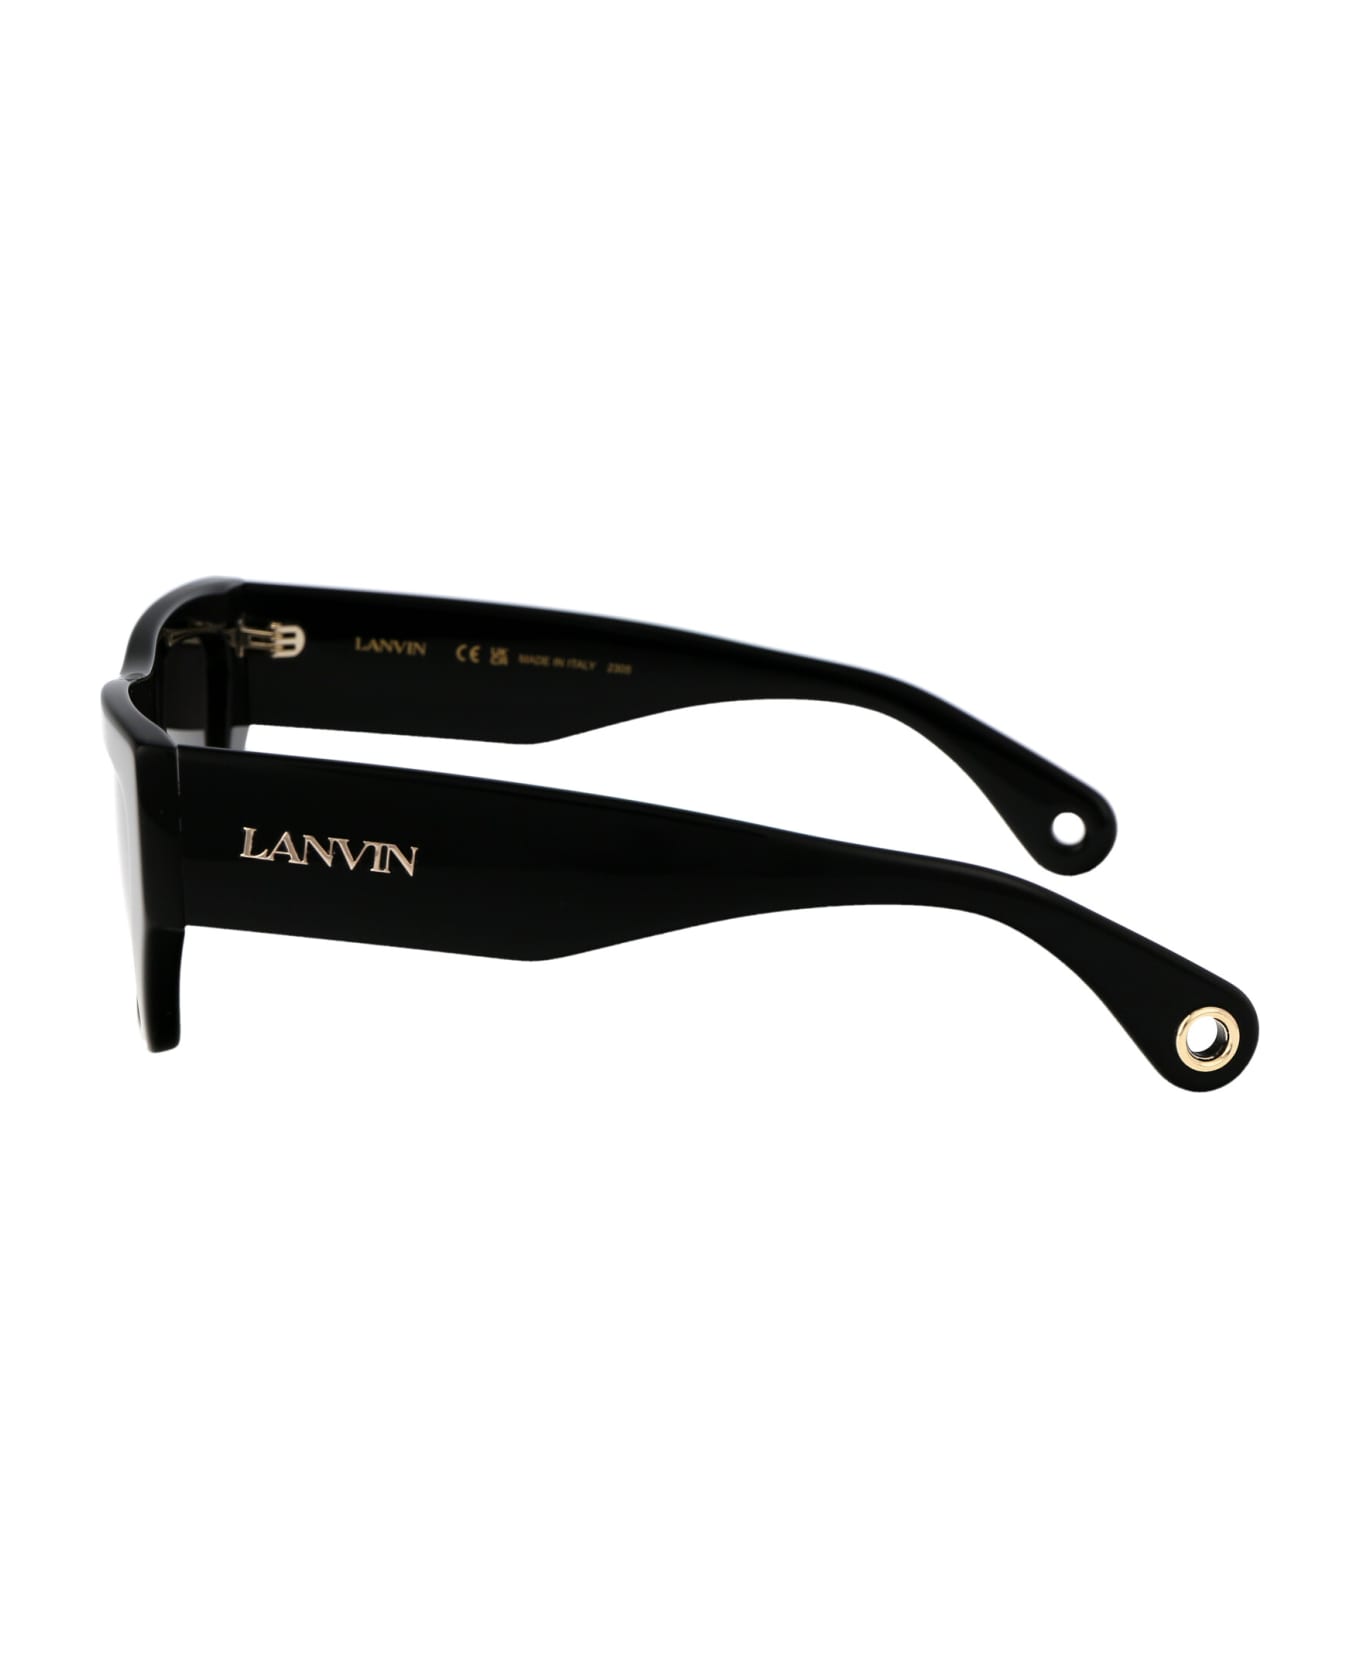 Lanvin Lnv652s Sunglasses - 001 BLACK